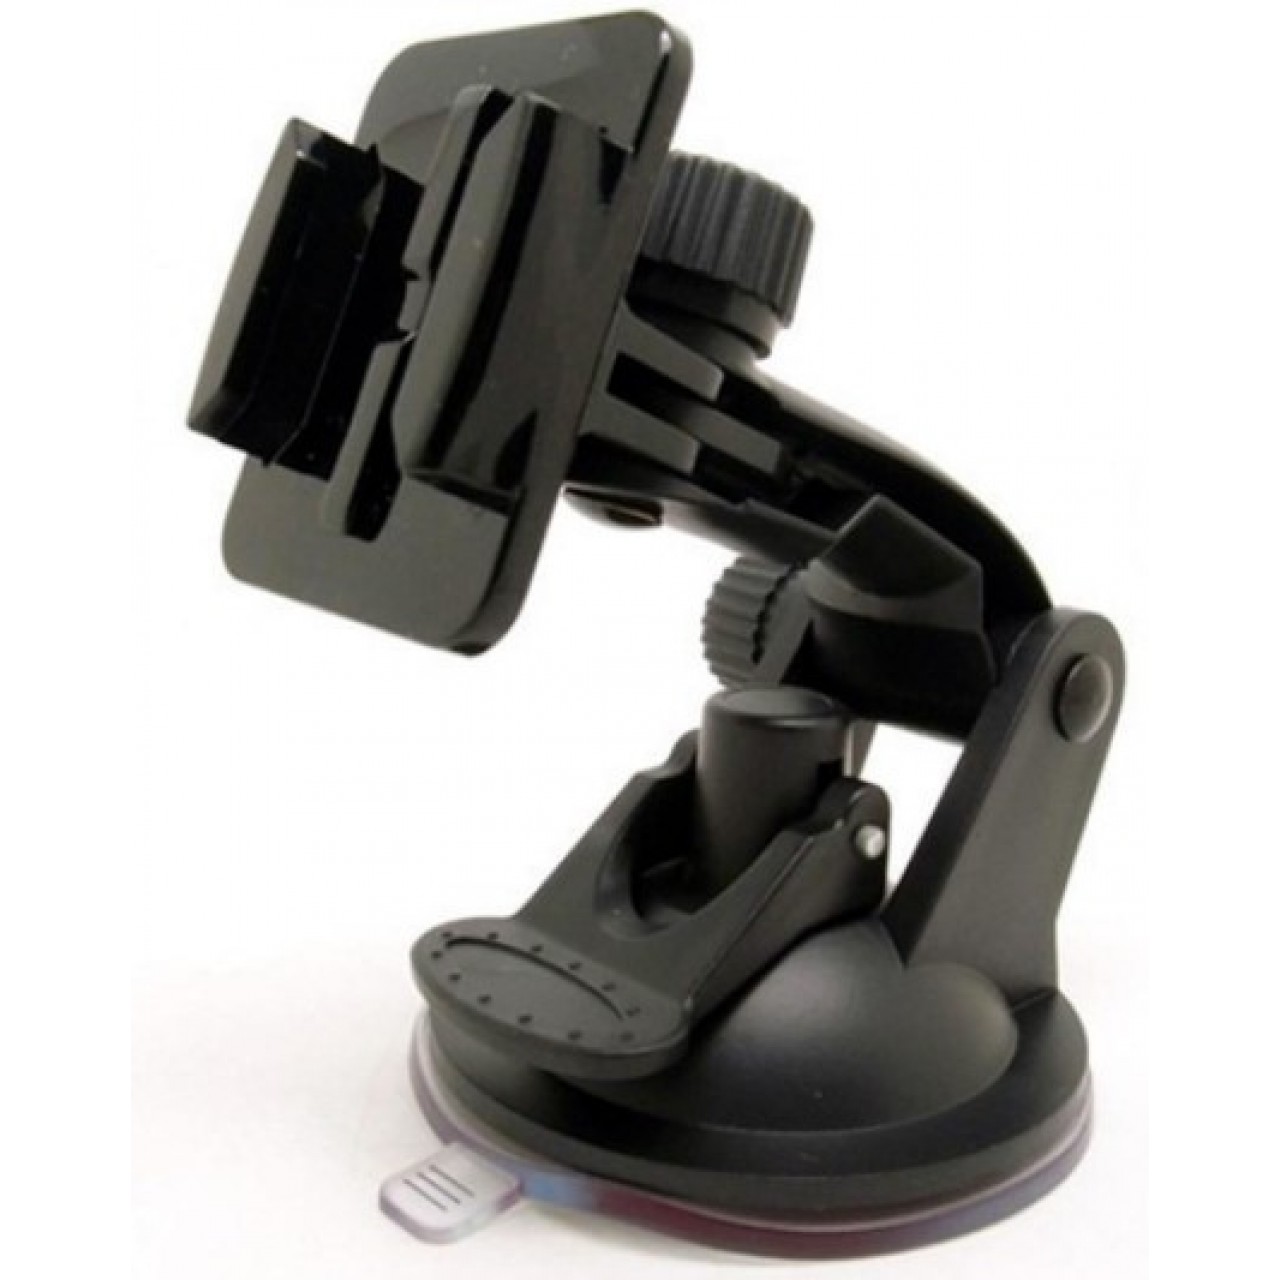 Βάση Αυτοκινήτου Stand Holder For GoPro HD Hero 1 2 3 Camera - 3434 - Μαύρο - OEM